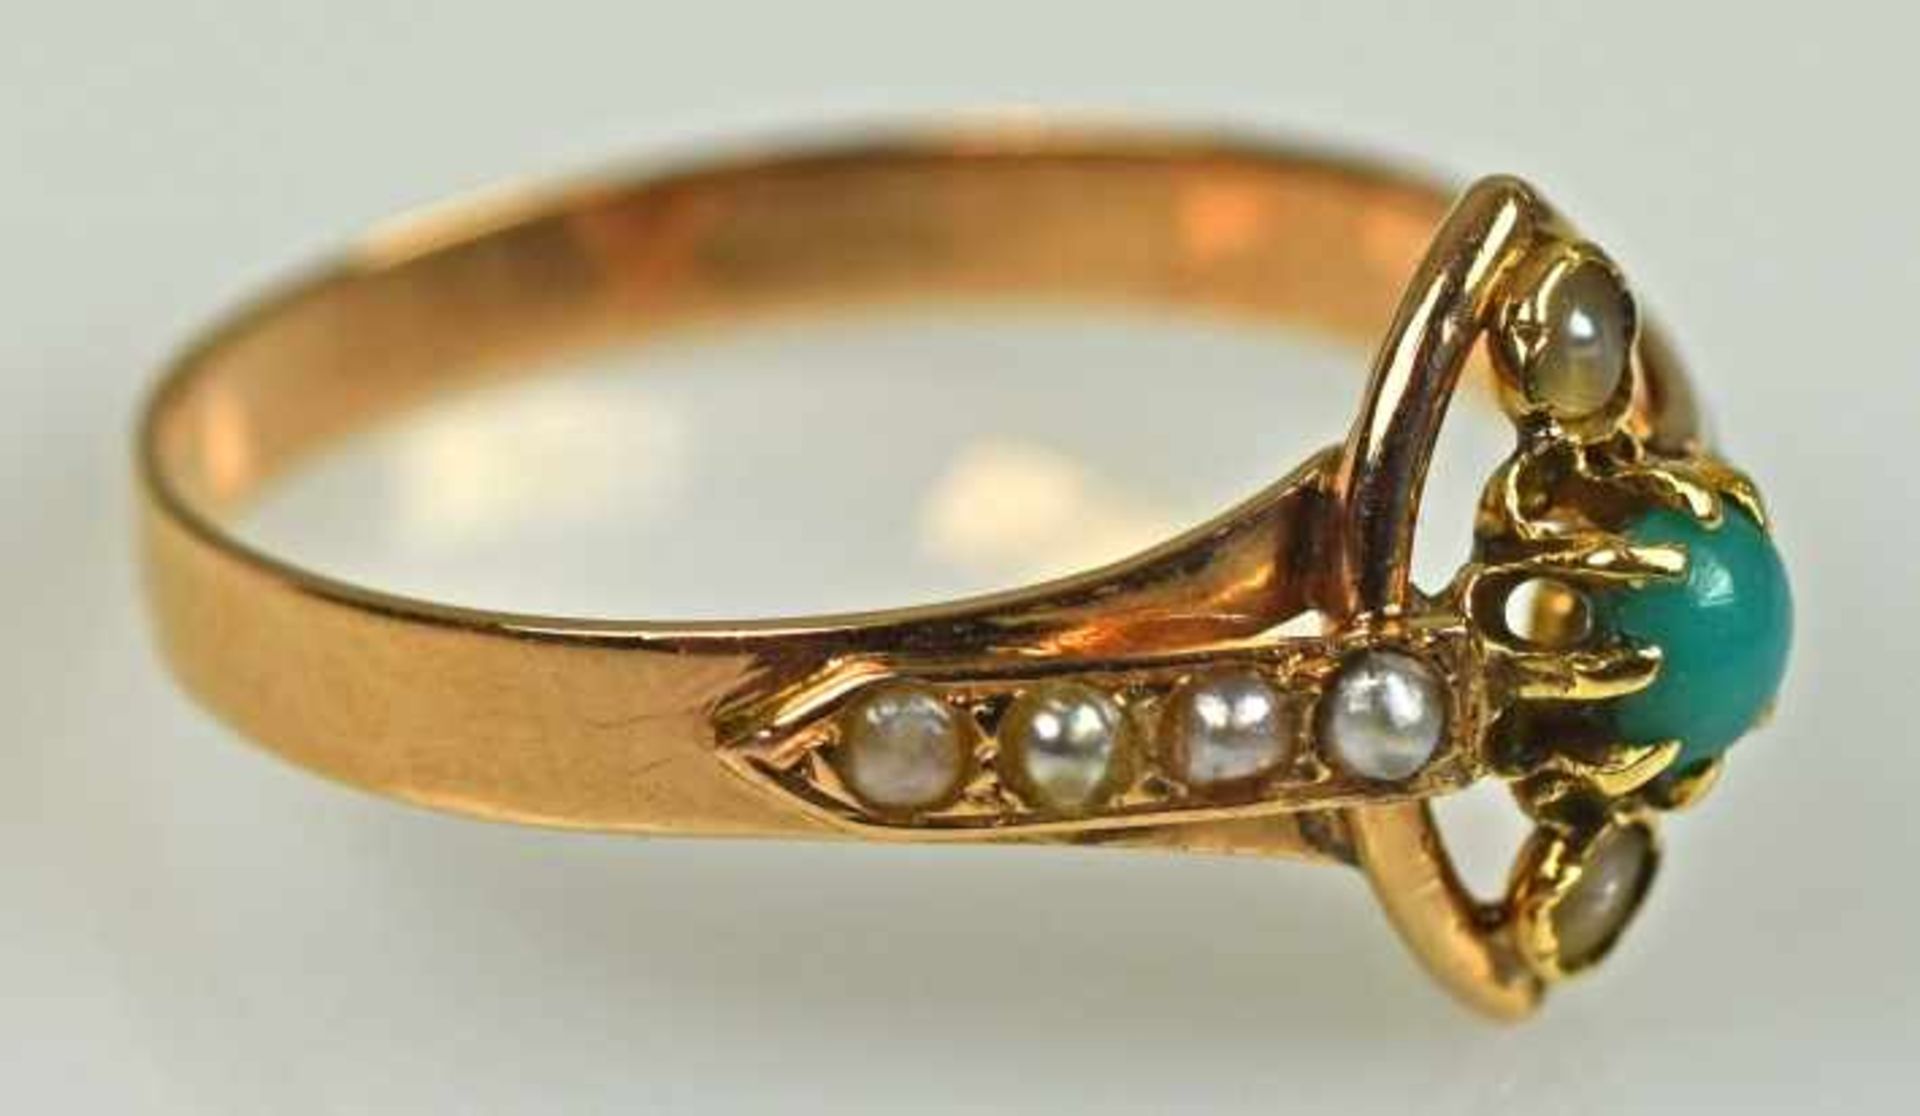 KLEINER RING mit Oval mittig, besetzt mit Türkis und kleinen Perlchen, rötliches Gold, wohl England, - Bild 2 aus 2